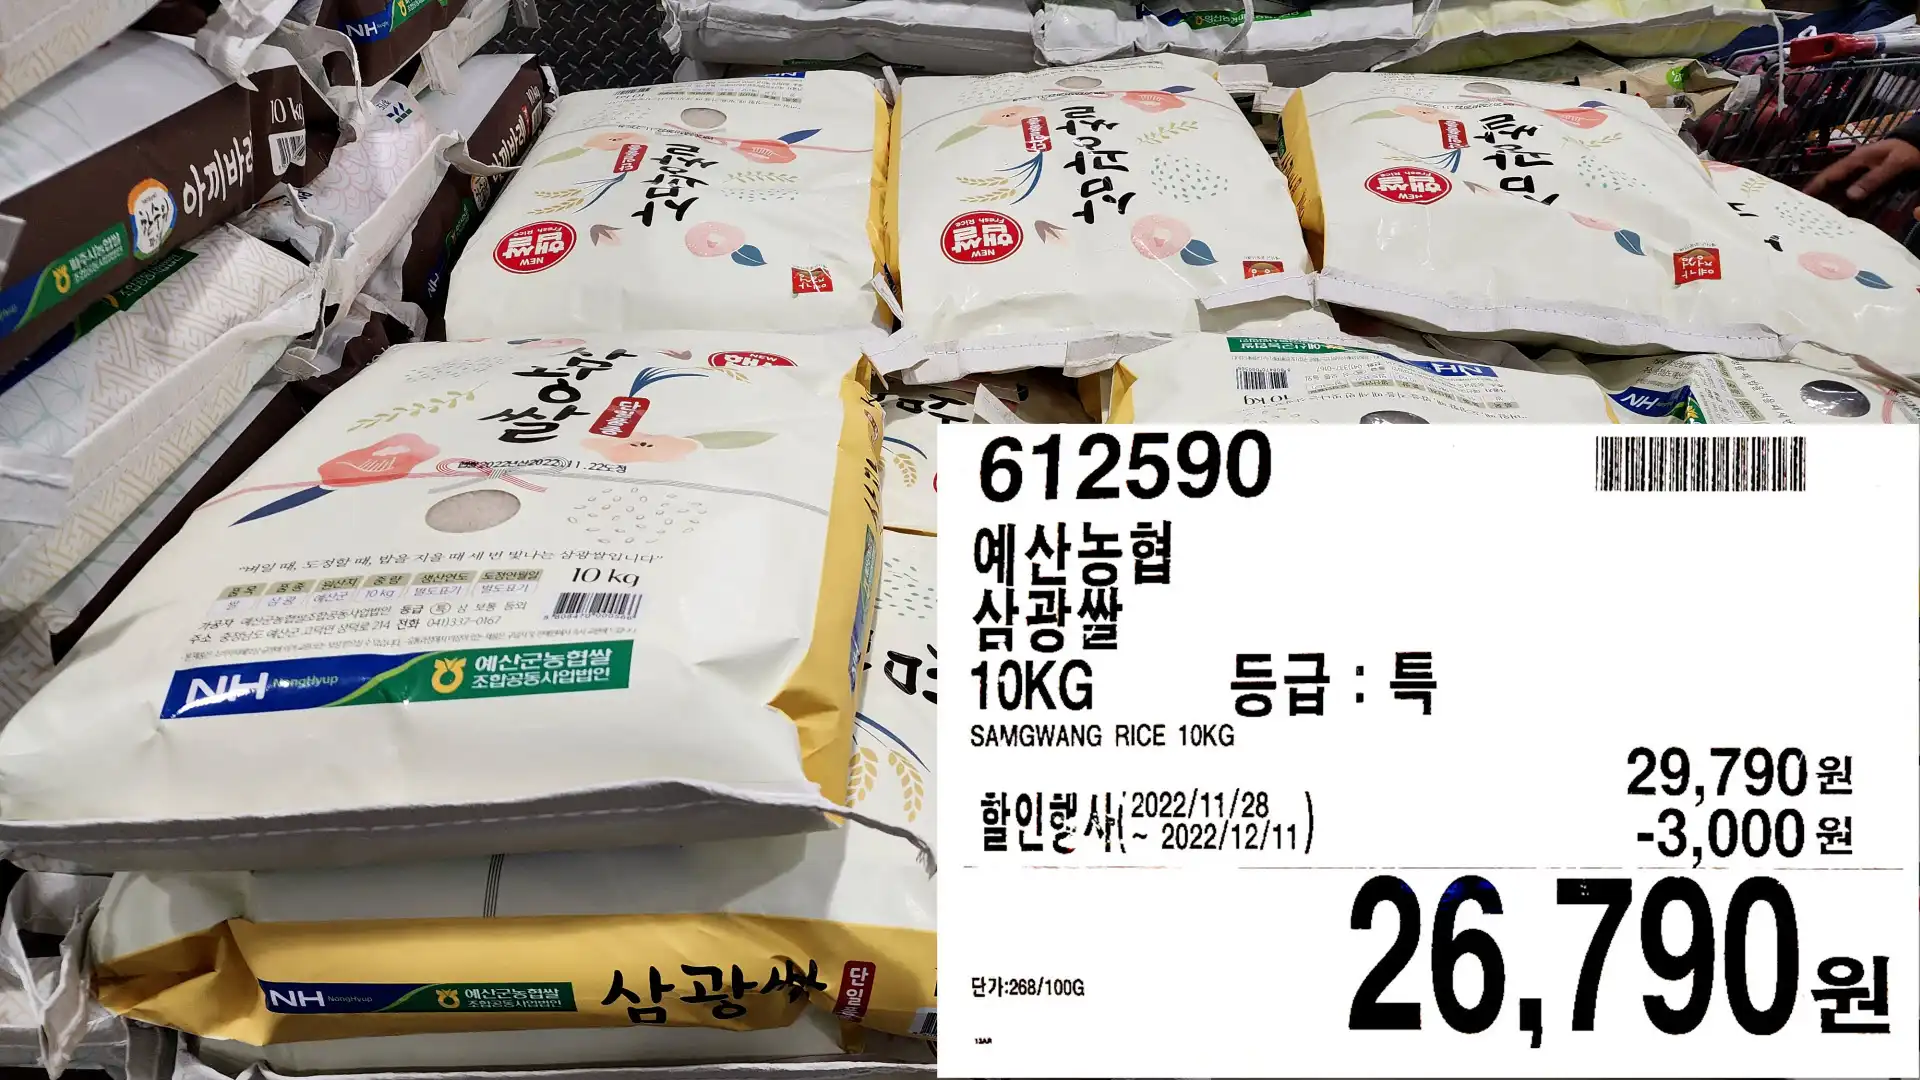 예산농협
삼광쌀
10KG
SAMGWANG RICE 10KG
26&#44;790원